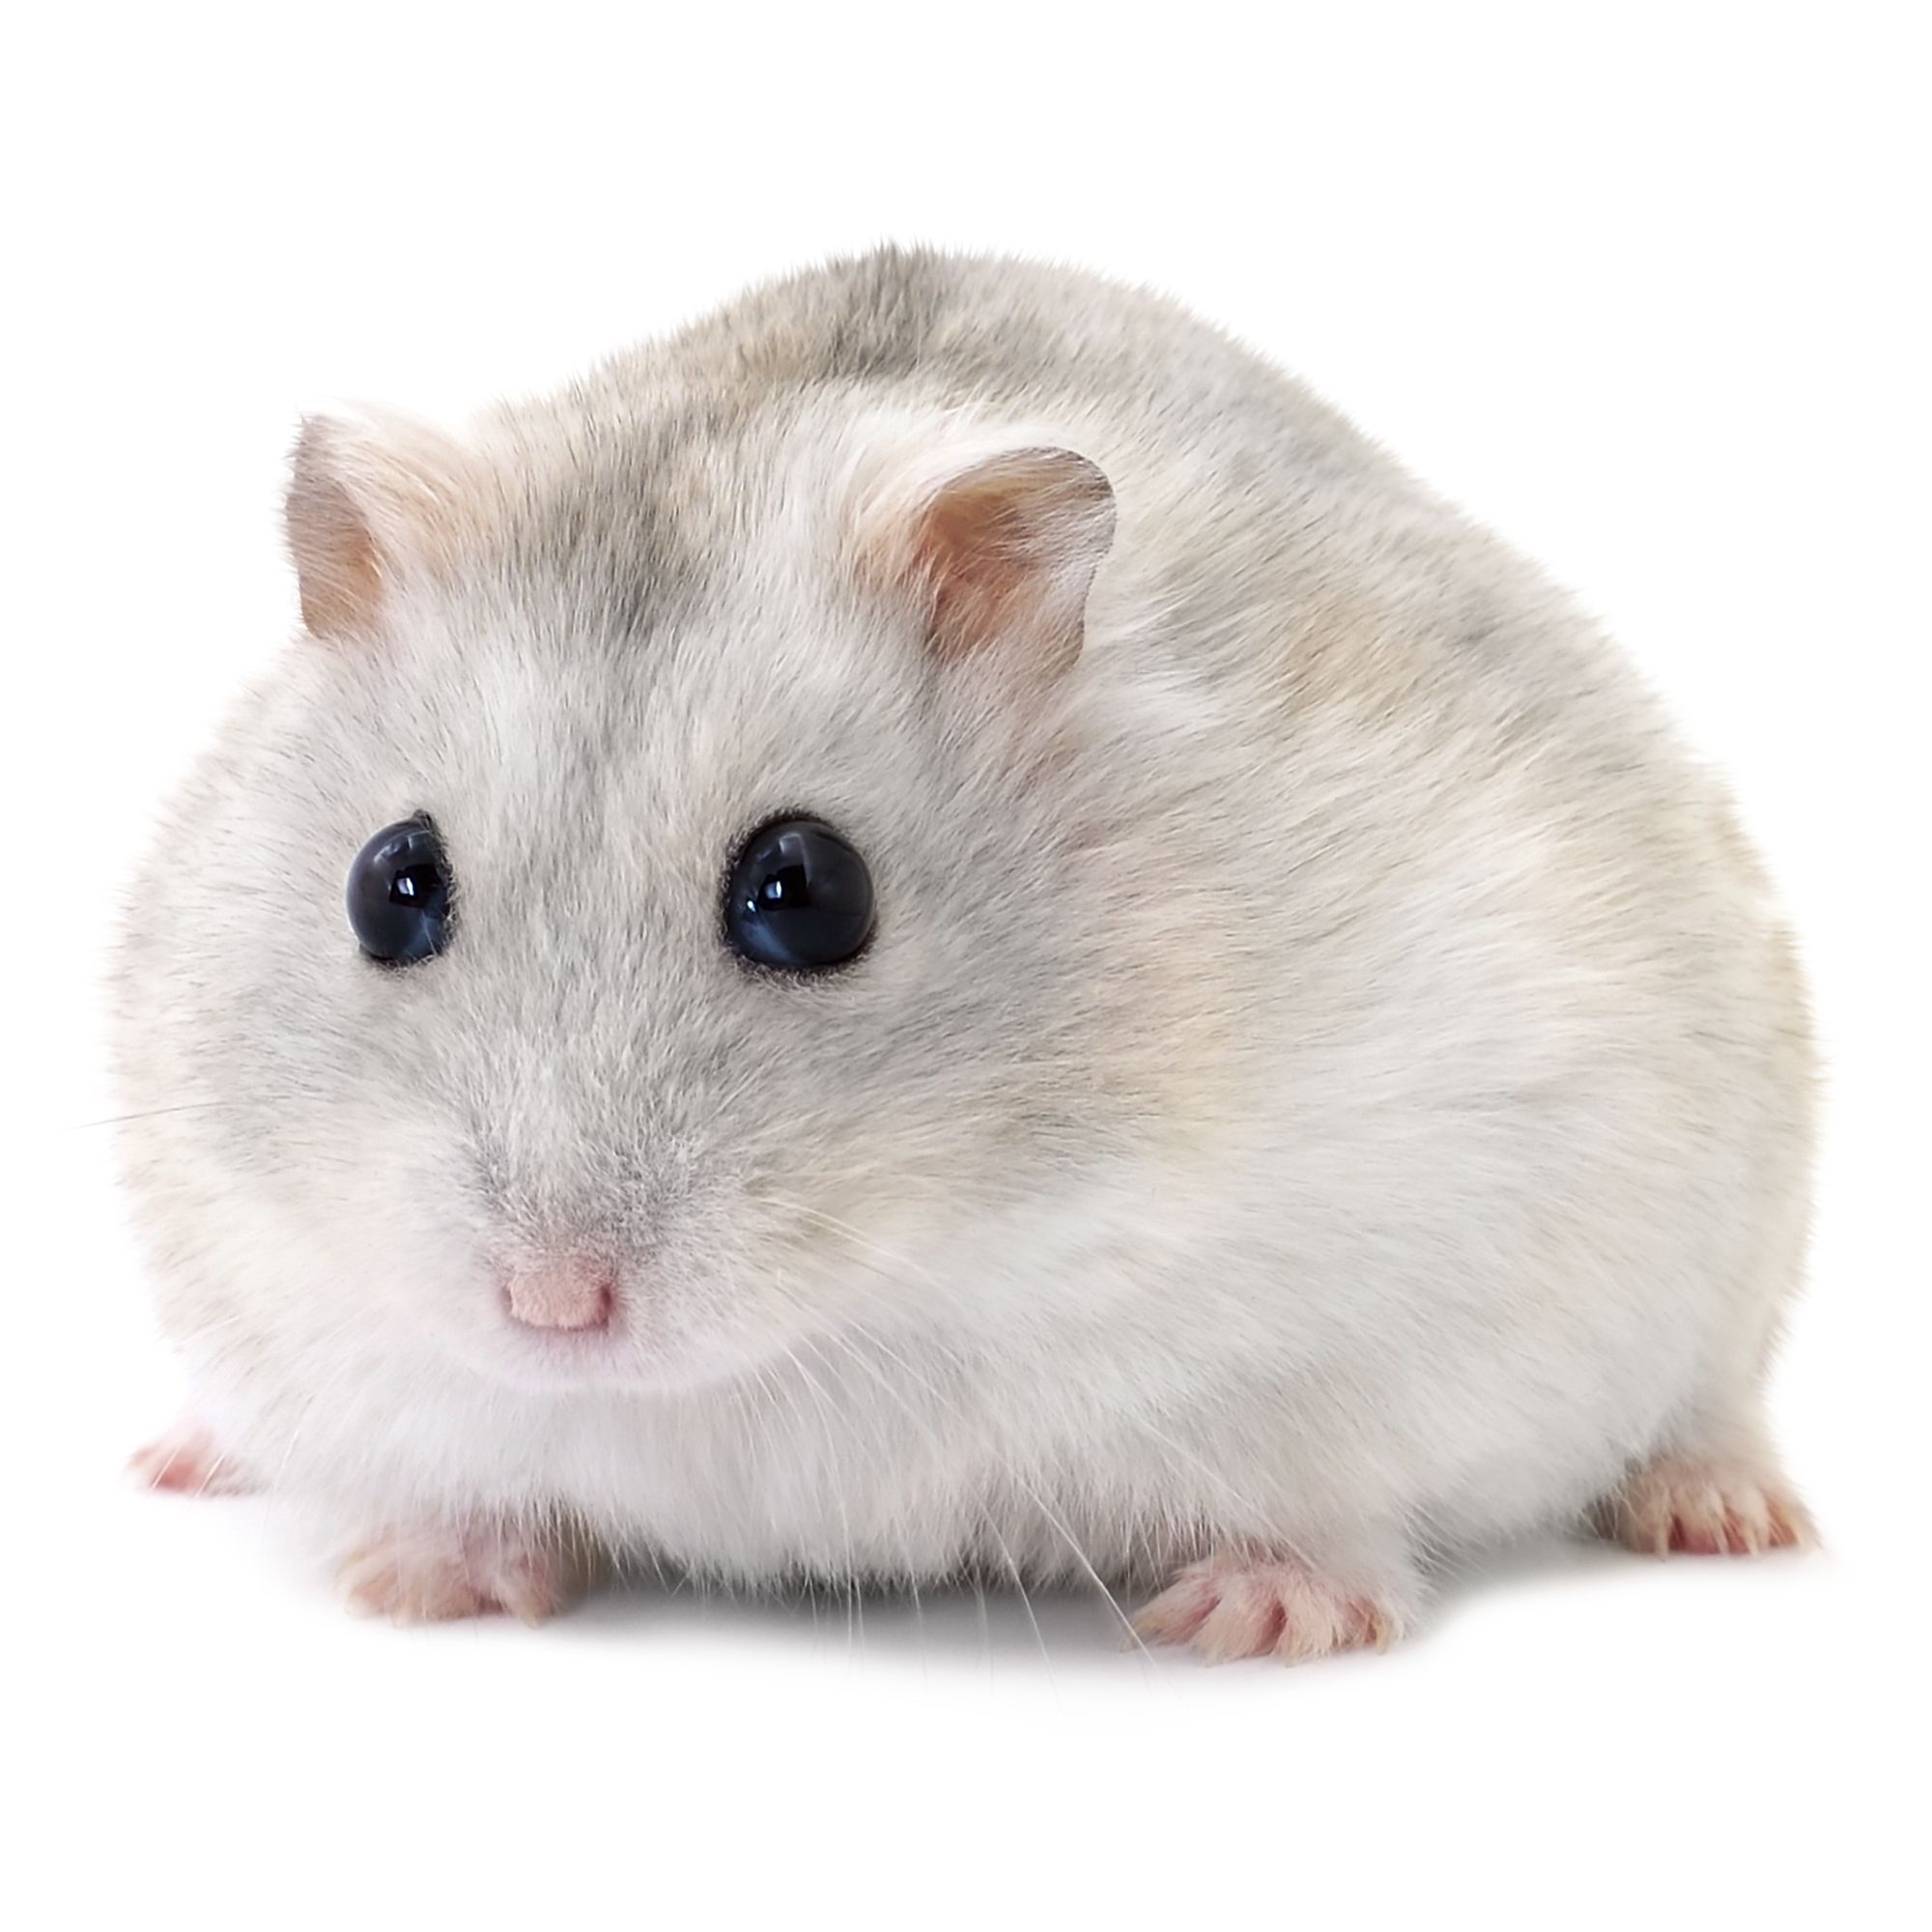 Russian Dwarf Hamster | small pet 